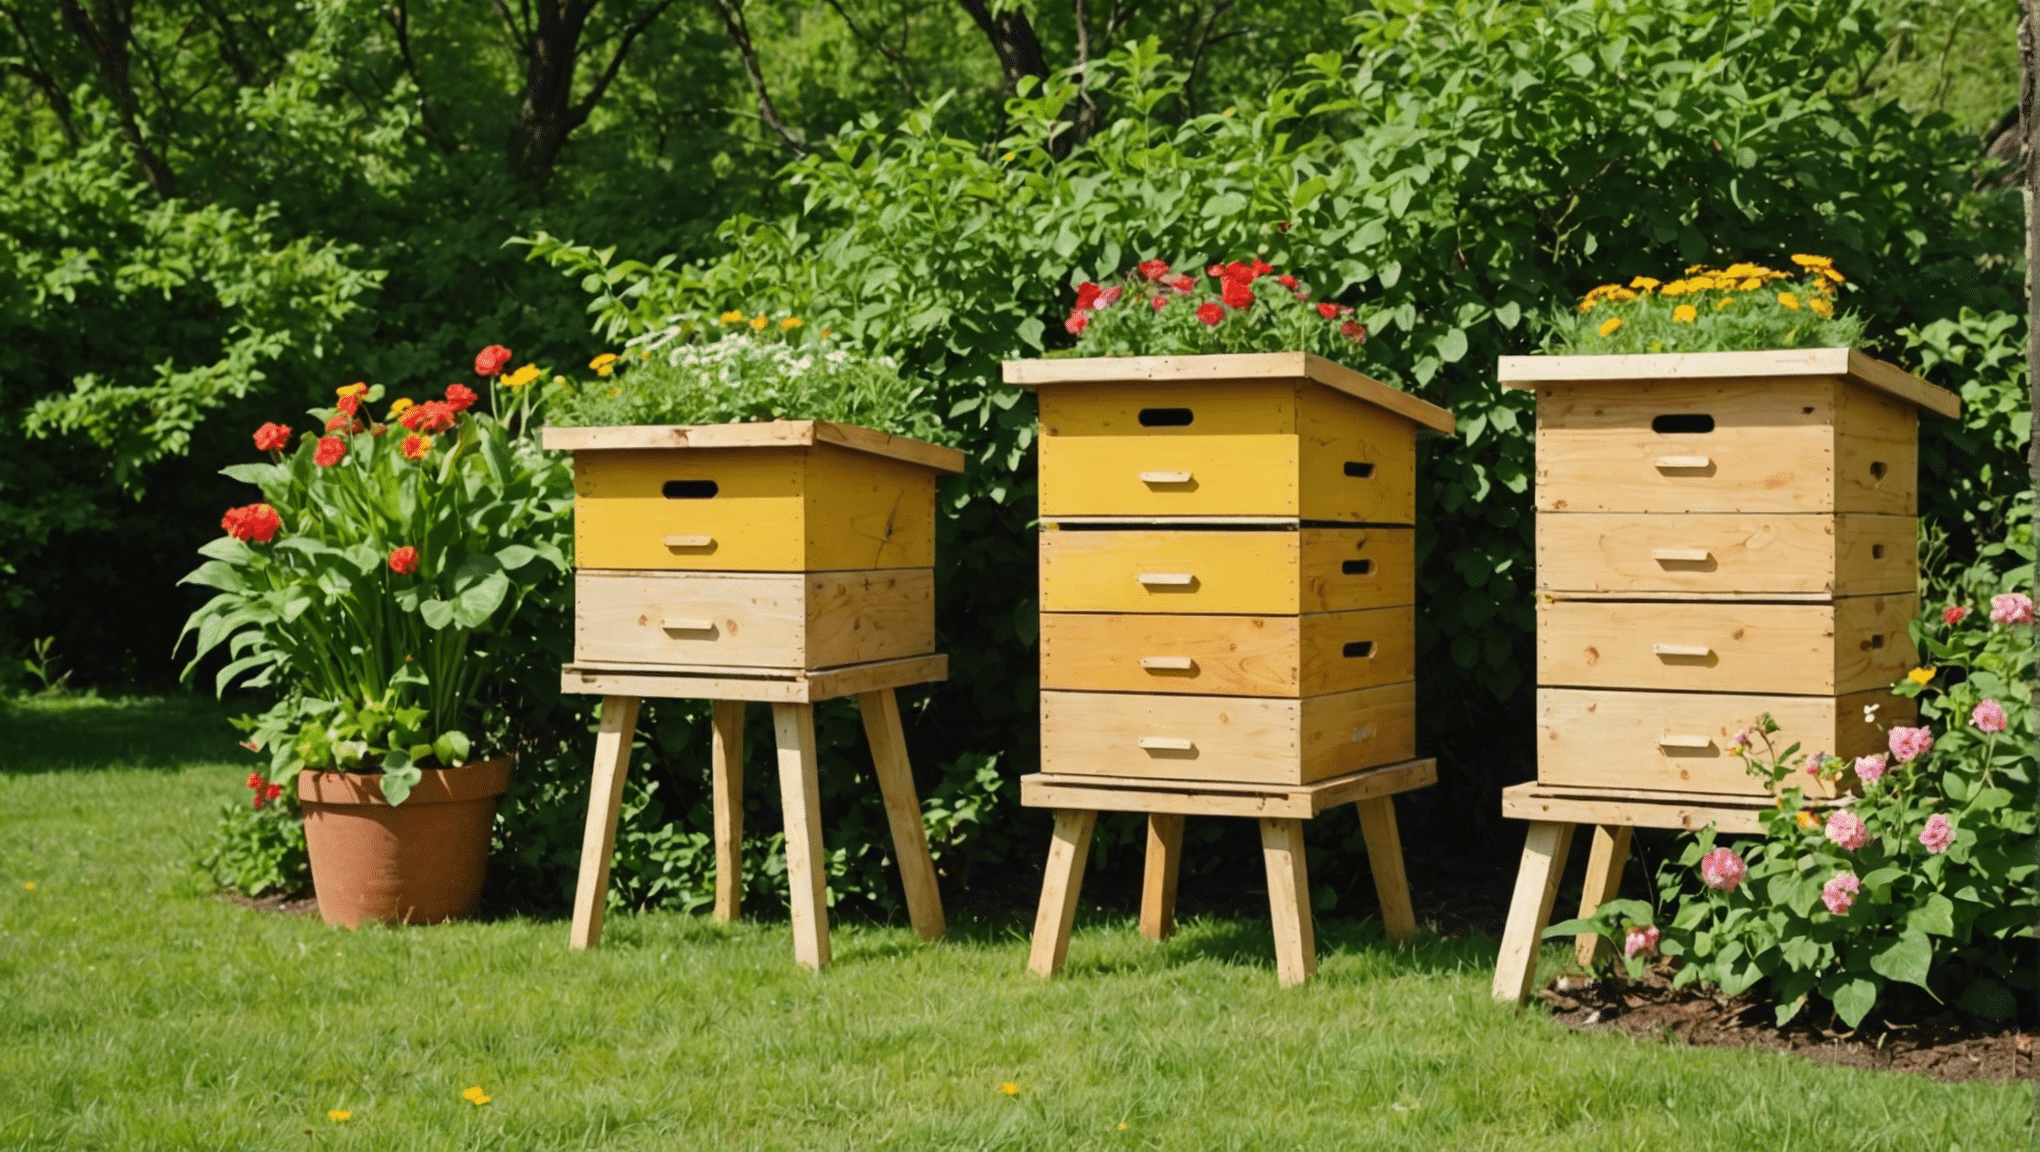 Arı kovanı kutularını kullanmanın avantajlarını ve bunların arıcılık uygulamalarını ve bal üretimini nasıl olumlu yönde etkileyebileceğini keşfedin.